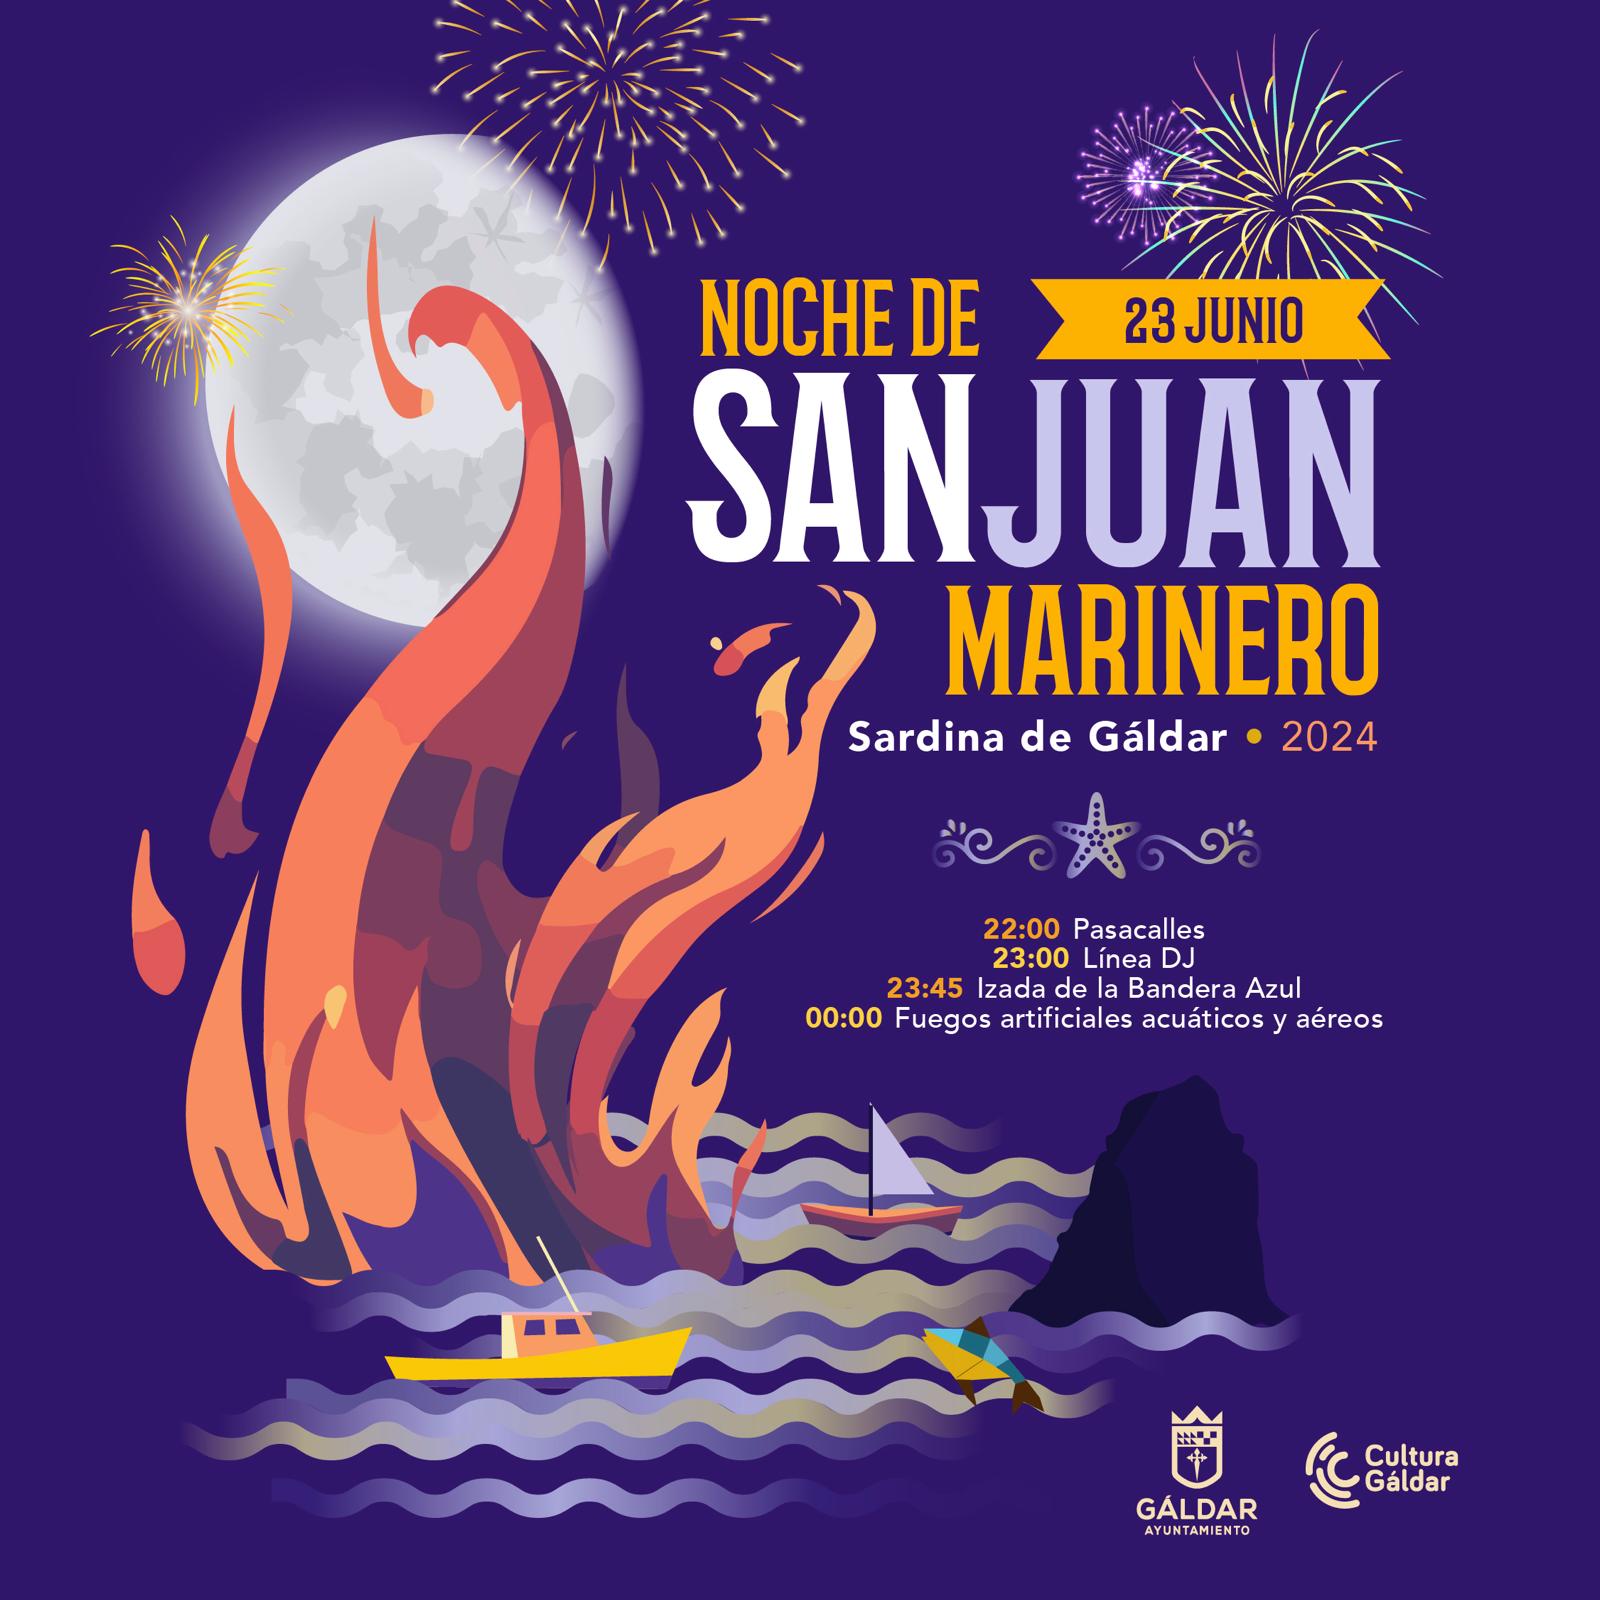 Sardina celebra el domingo la Noche de San Juan Marinero con música y